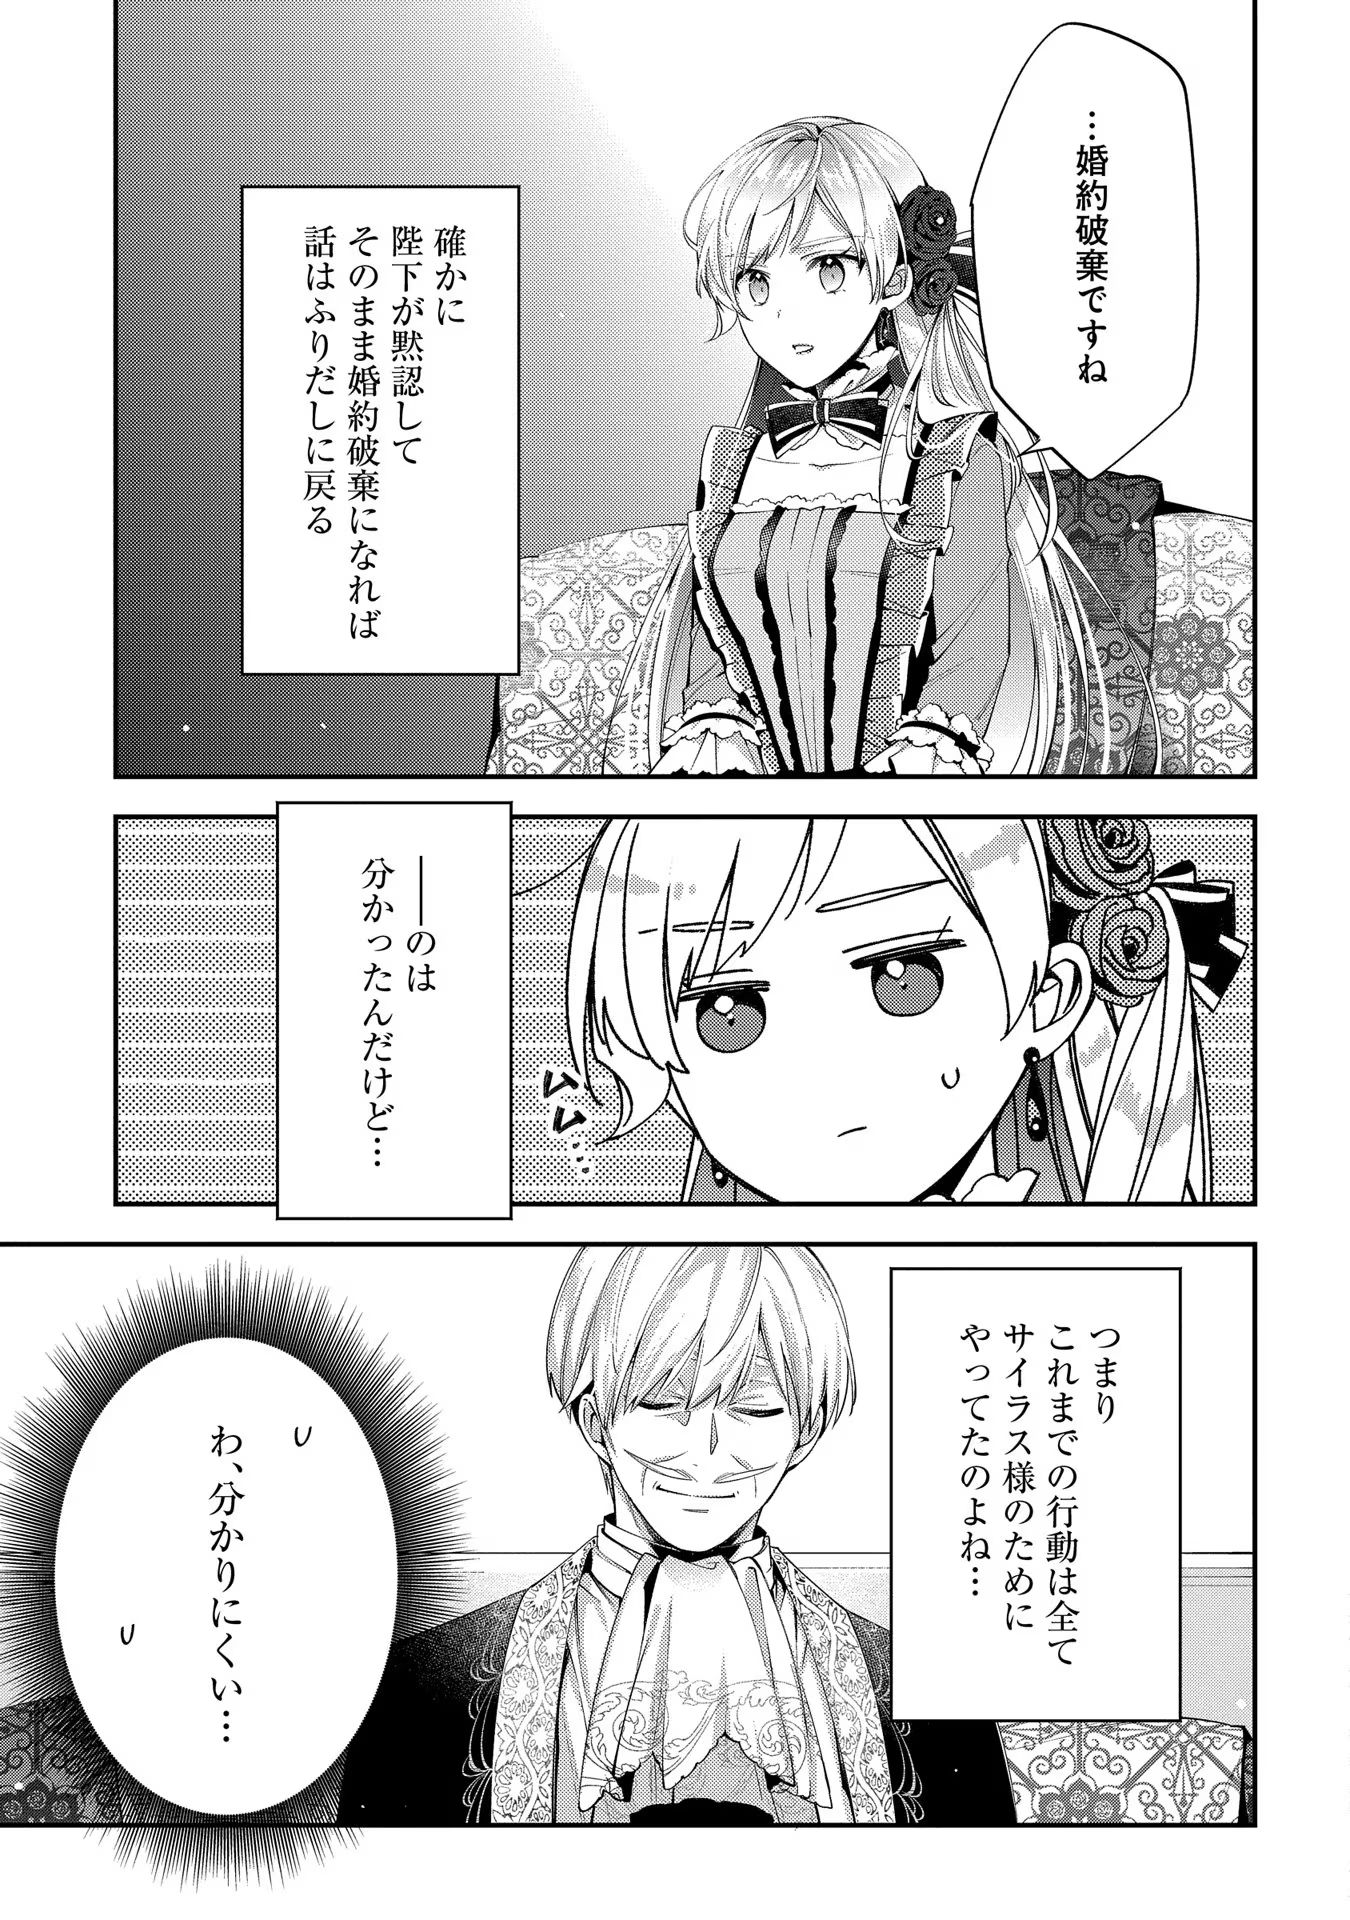 Outaishi ni Konyaku Hakisareta no de, Mou Baka no Furi wa Yameyou to Omoimasu - Chapter 9 - Page 11